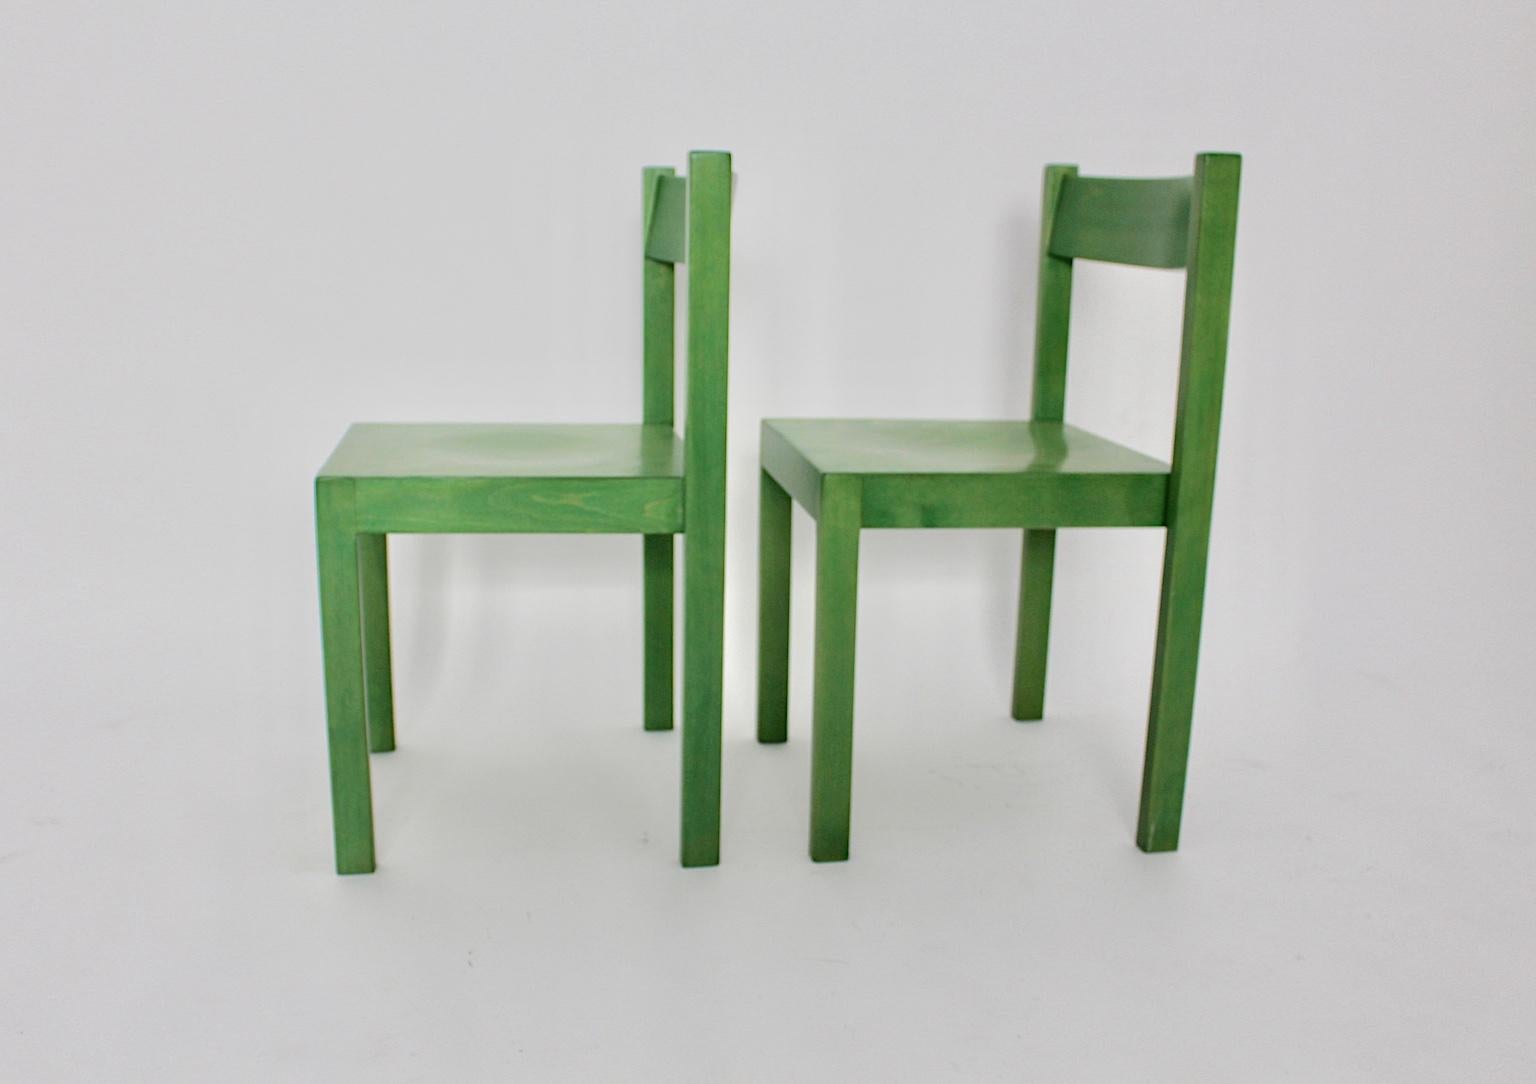 Cet ensemble de 2 chaises de salle à manger vintage vertes a été conçu par Carl Auböck 1956 Vienna et exécuté par E & A Pollak Vienna.
Les chaises de salle à manger ont été fabriquées en bois de hêtre massif et en contreplaqué et ont été teintées en